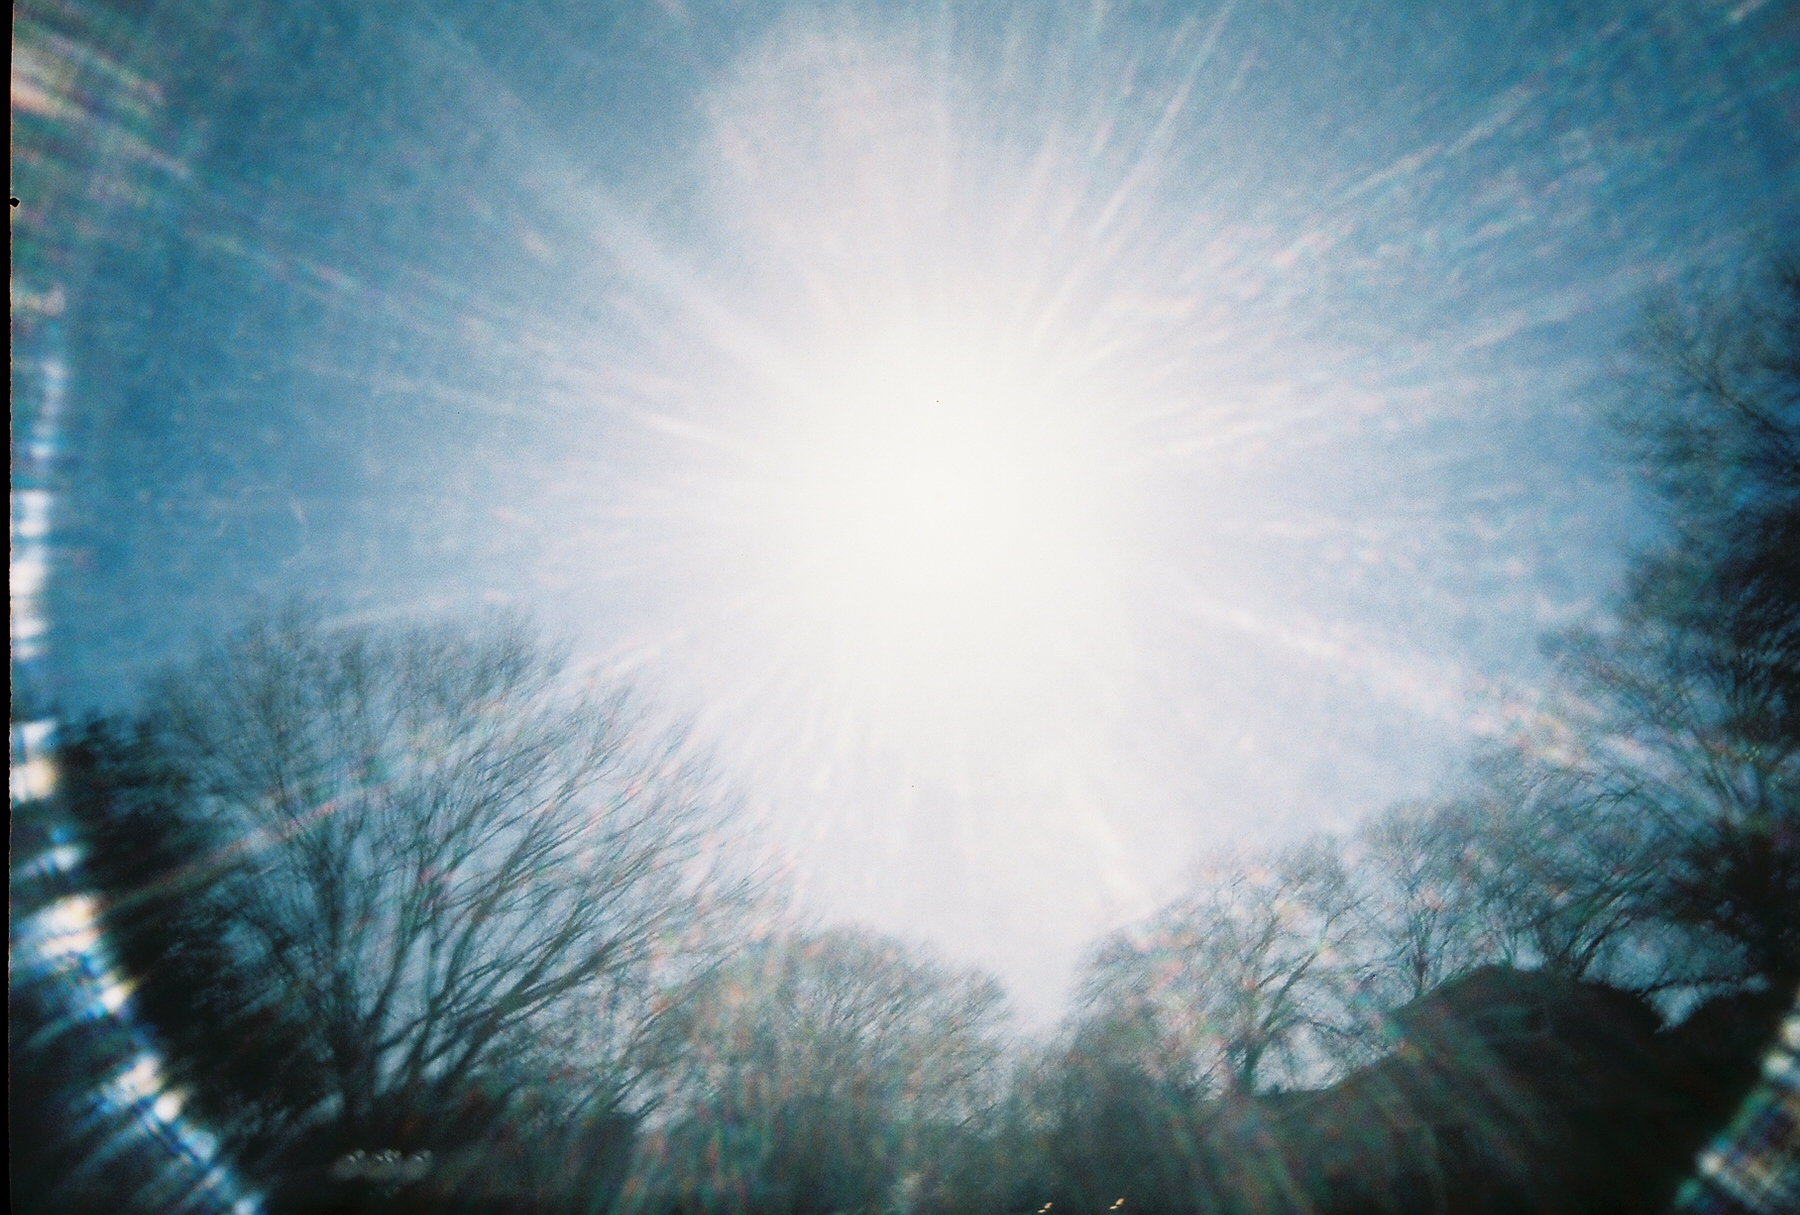 sun glare by An Ceann Corr on flickr - Image Journal